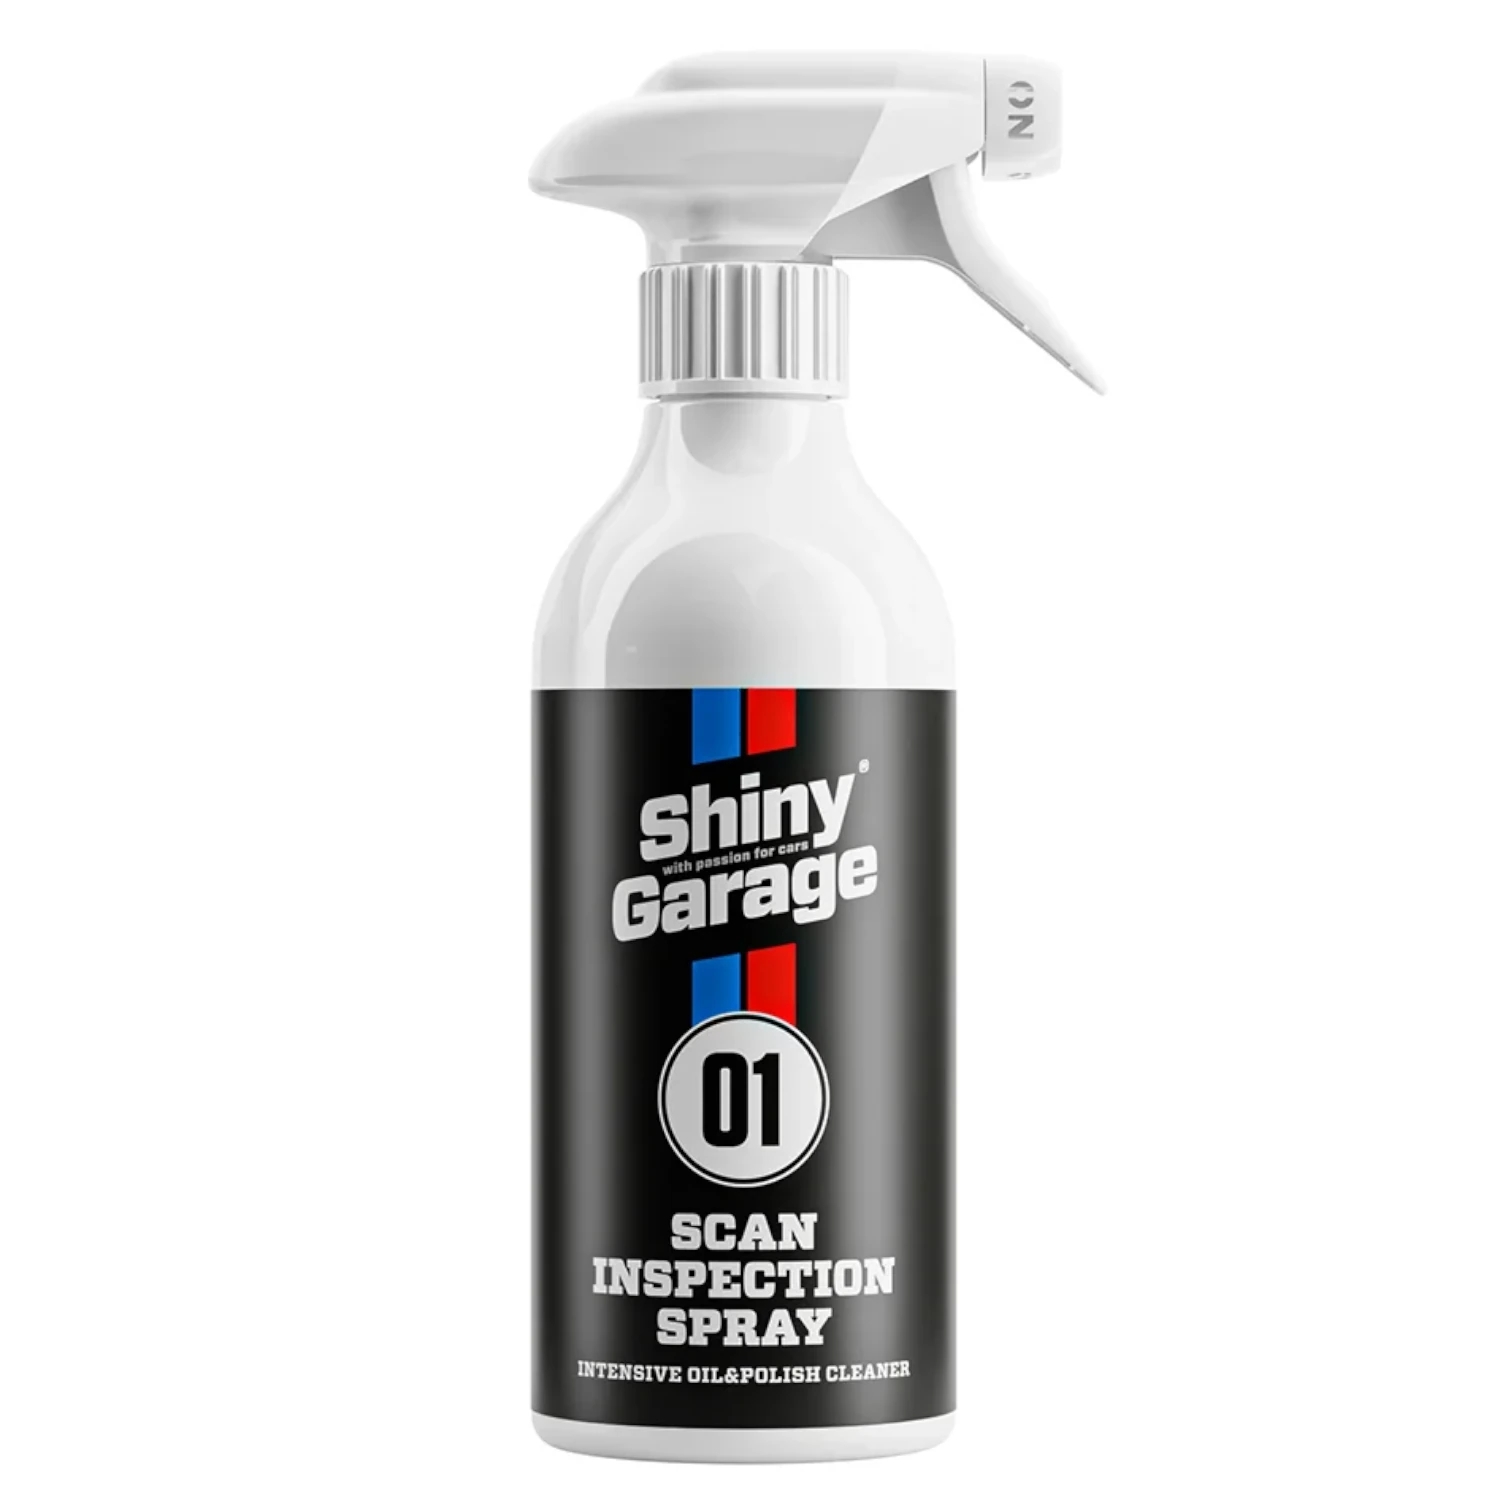 Image of Shiny Garage Scan Inspection Spray - płyn inspekcyjny 500 ml